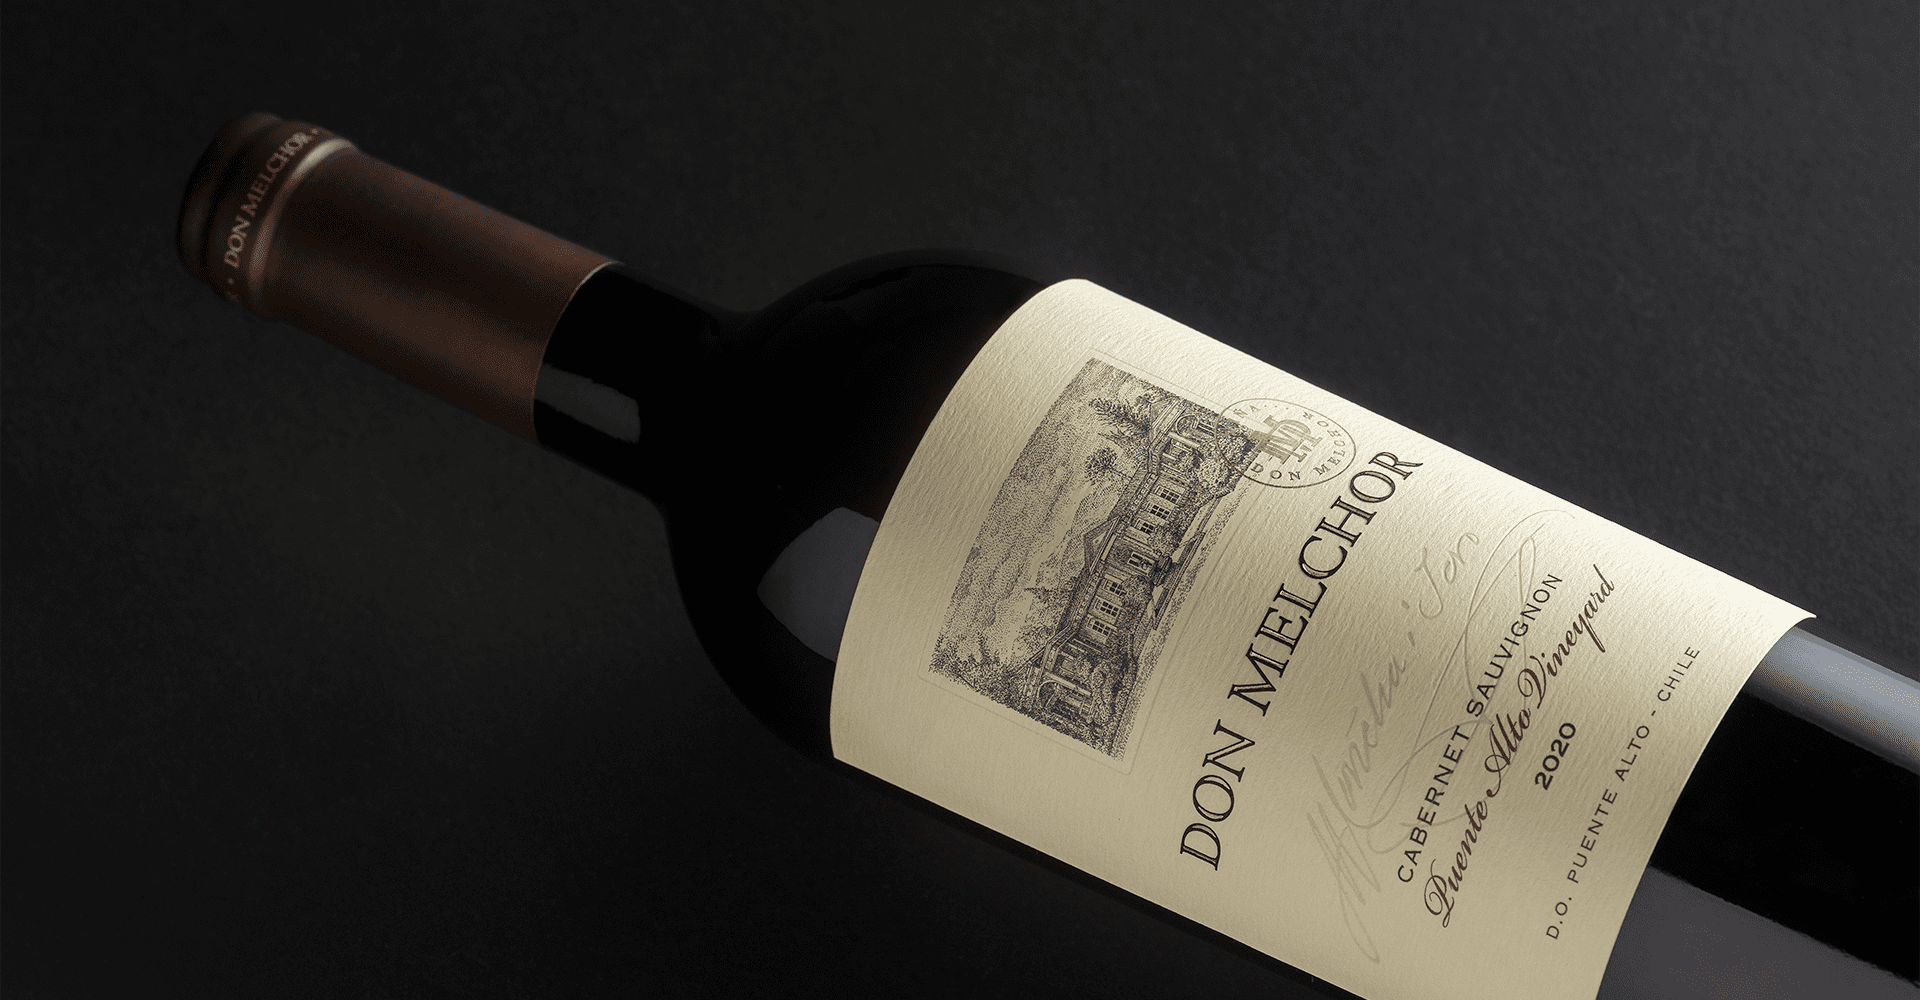 Don Melchor 2020 entre los 100 mejores vinos de Chile según James Suckling